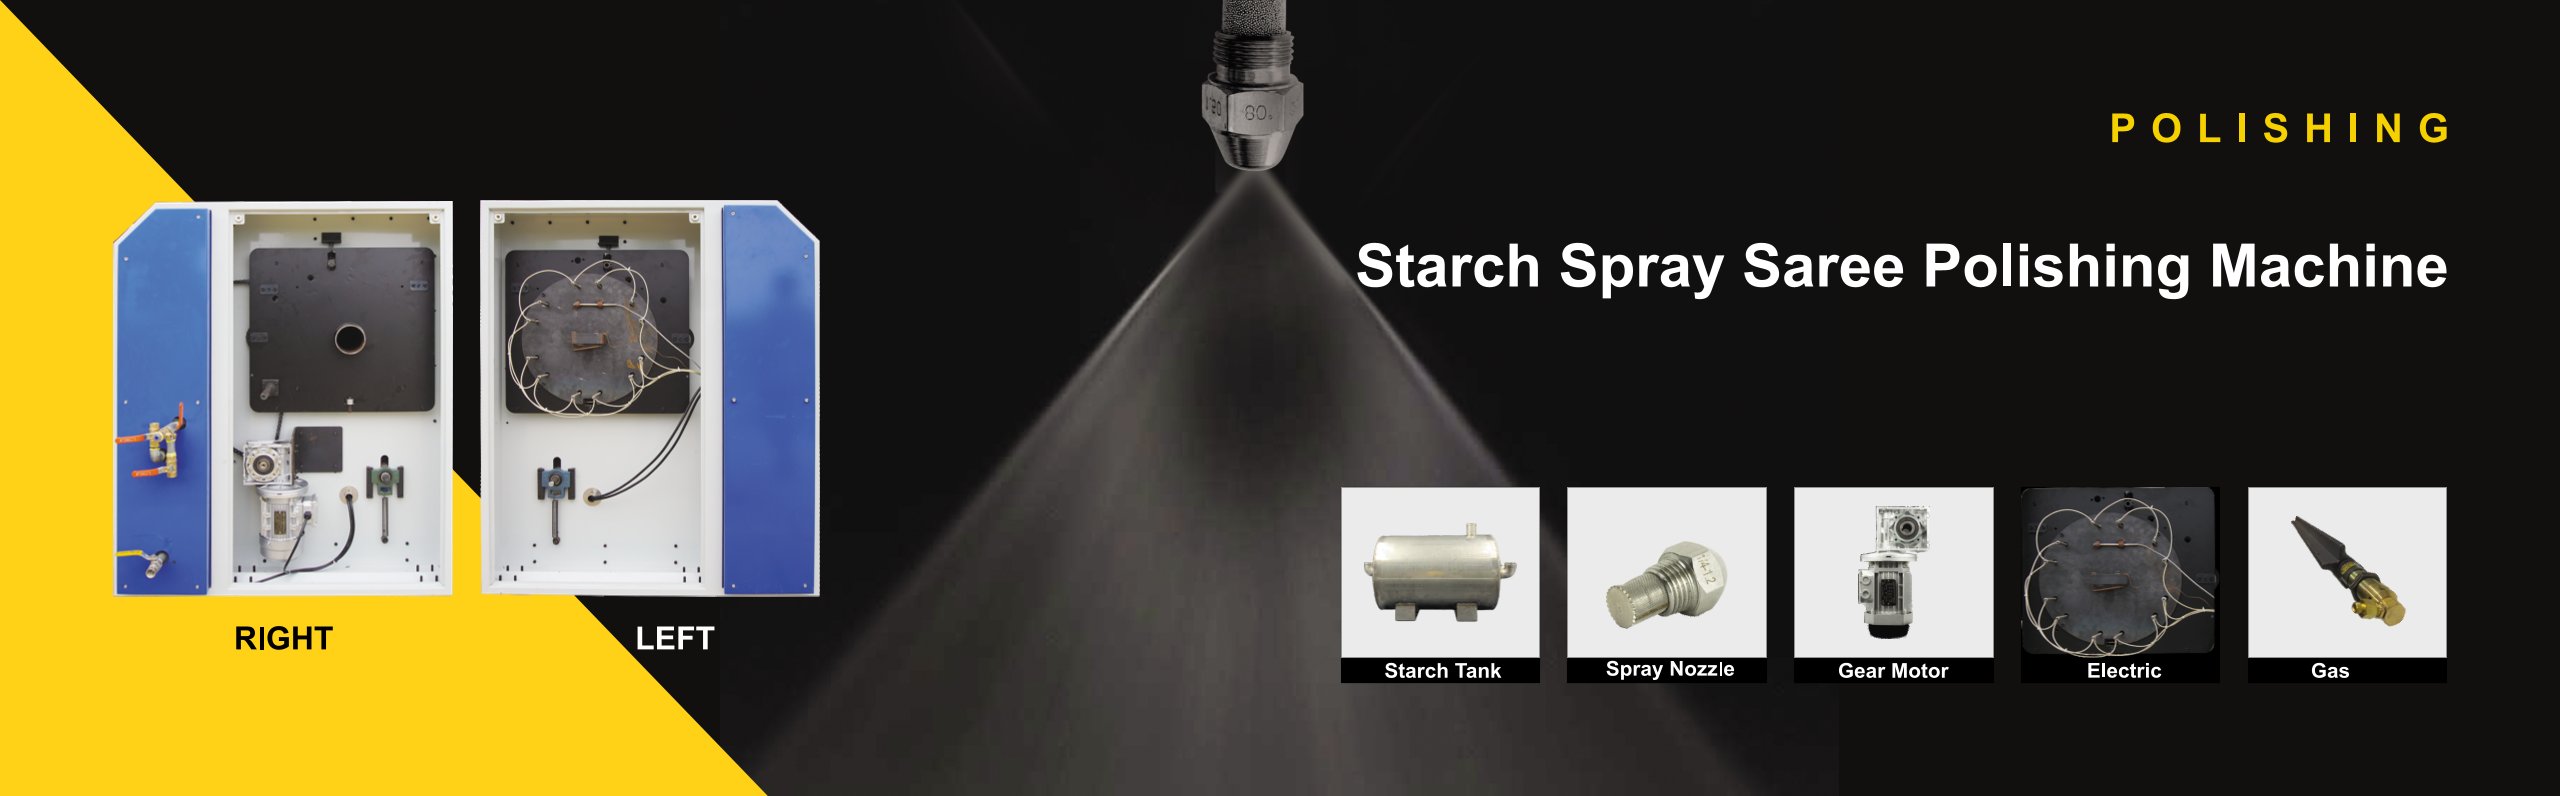 1_Starch_spray